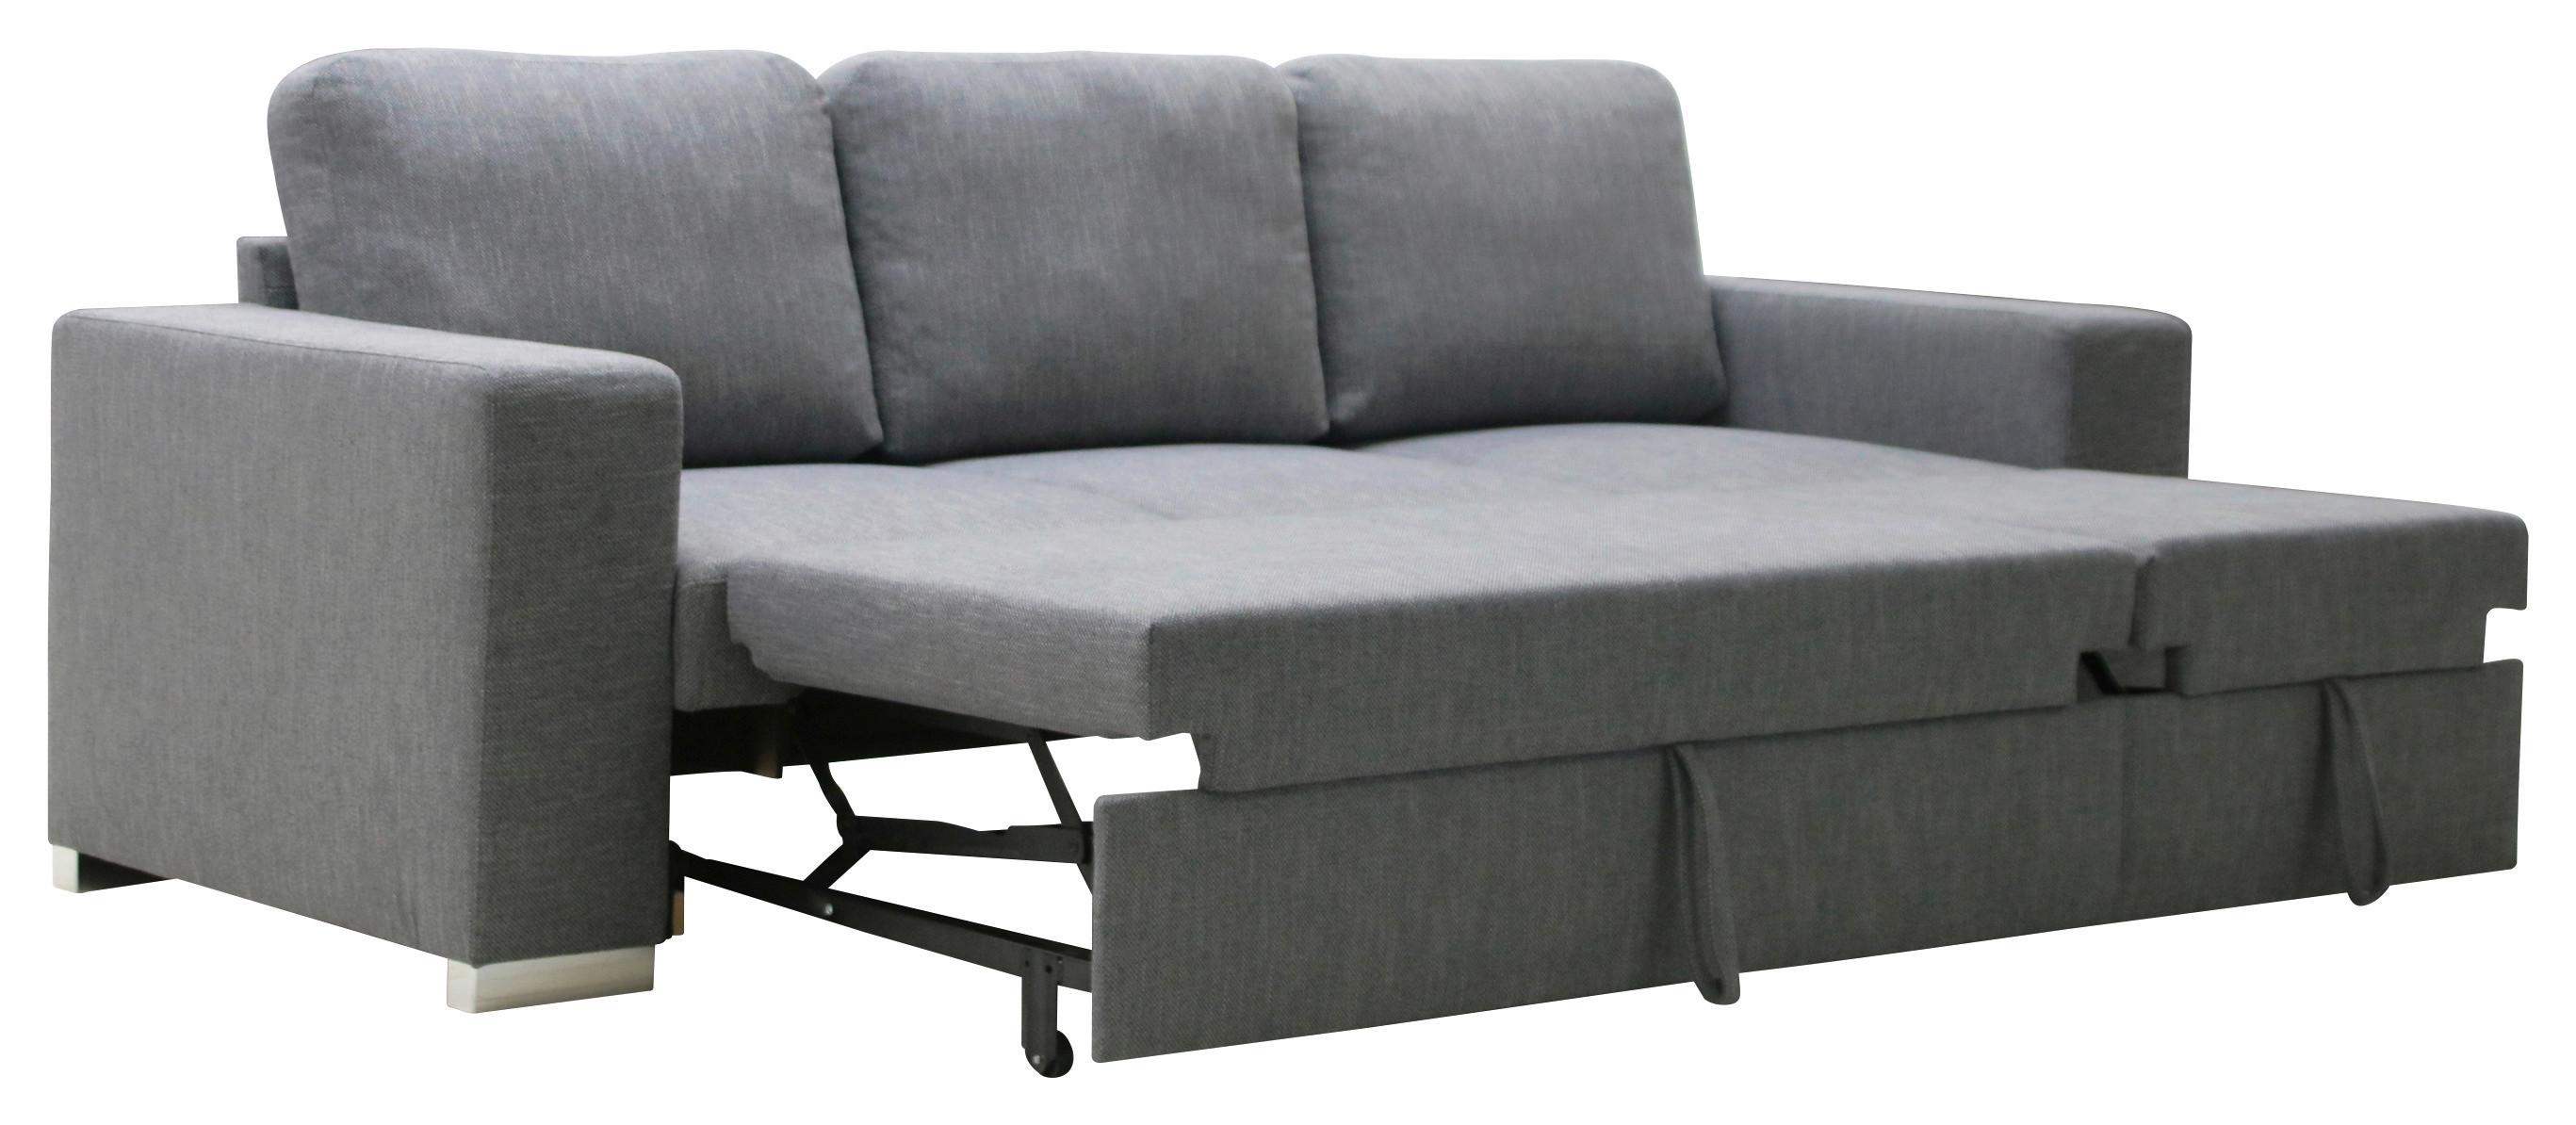 3-Sitzer-Sofa + Schlaffunktion Stone Anthrazit - Chromfarben/Anthrazit, Basics, Holz/Holzwerkstoff (233/66/88/83/147cm) - P & B